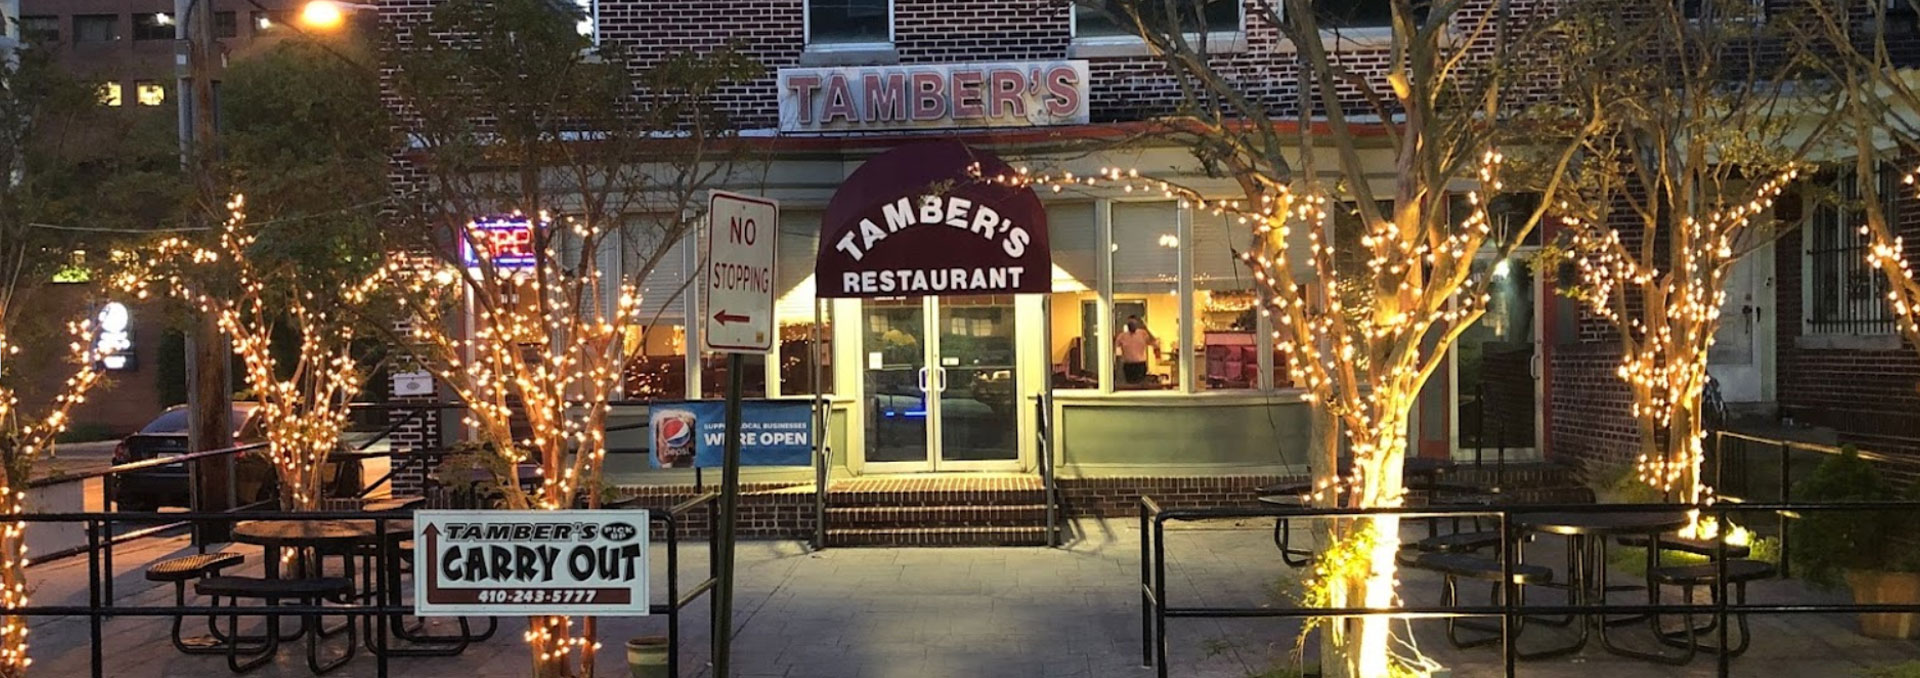 tabmer`s restaurant image